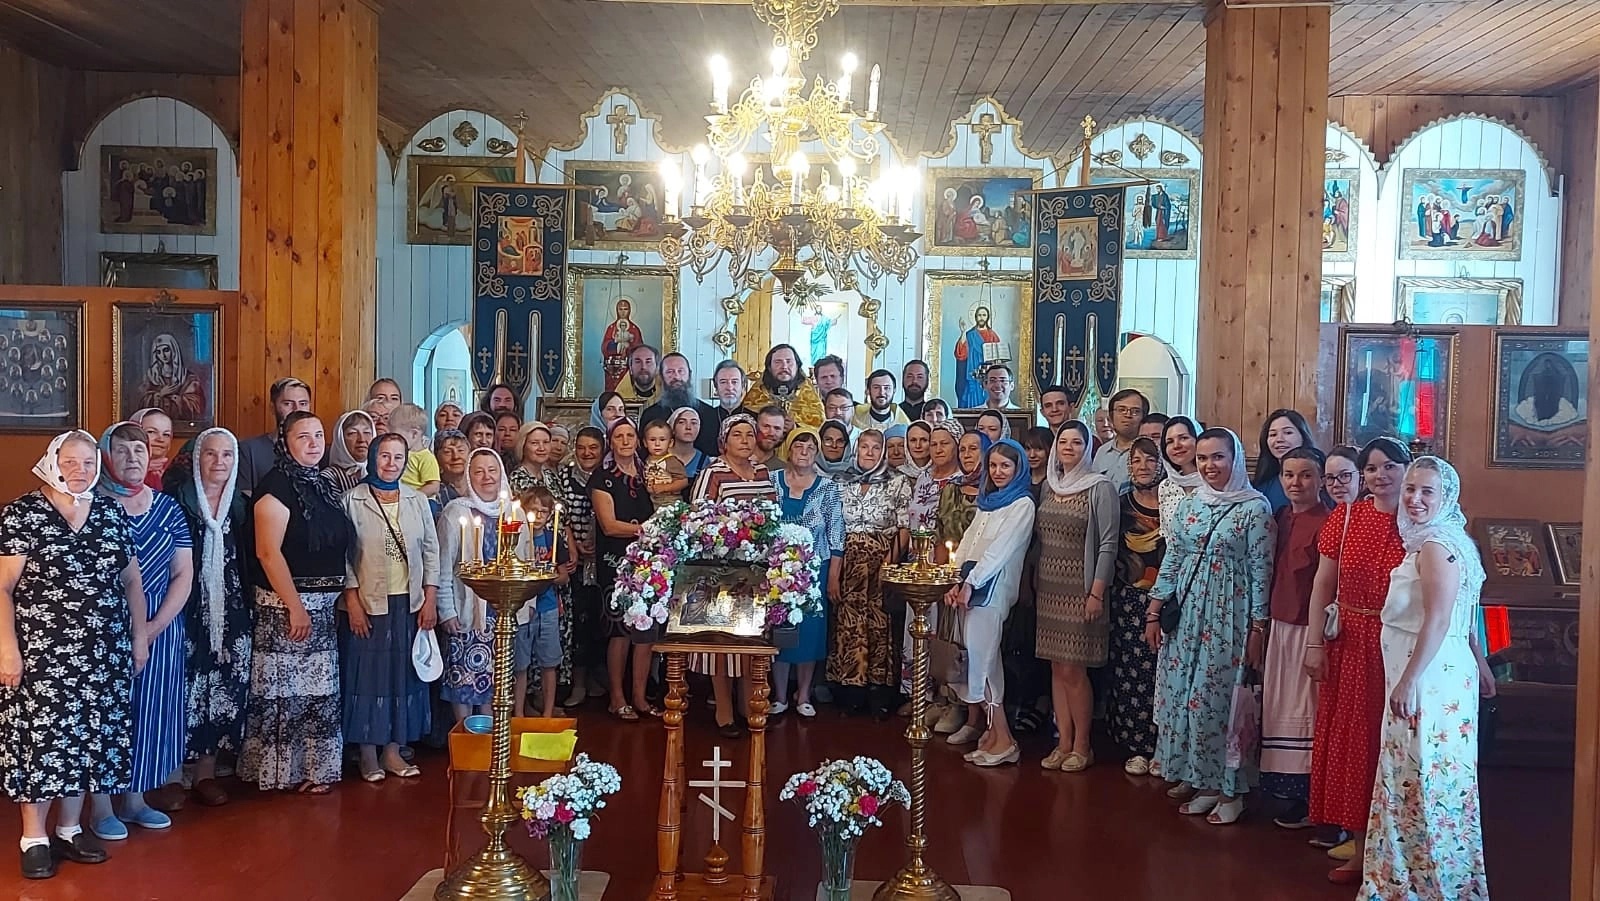 Епархиальная комиссия по вопросам семьи, защиты материнства и детства организовала праздник для многодетных семей в селе Кощаково